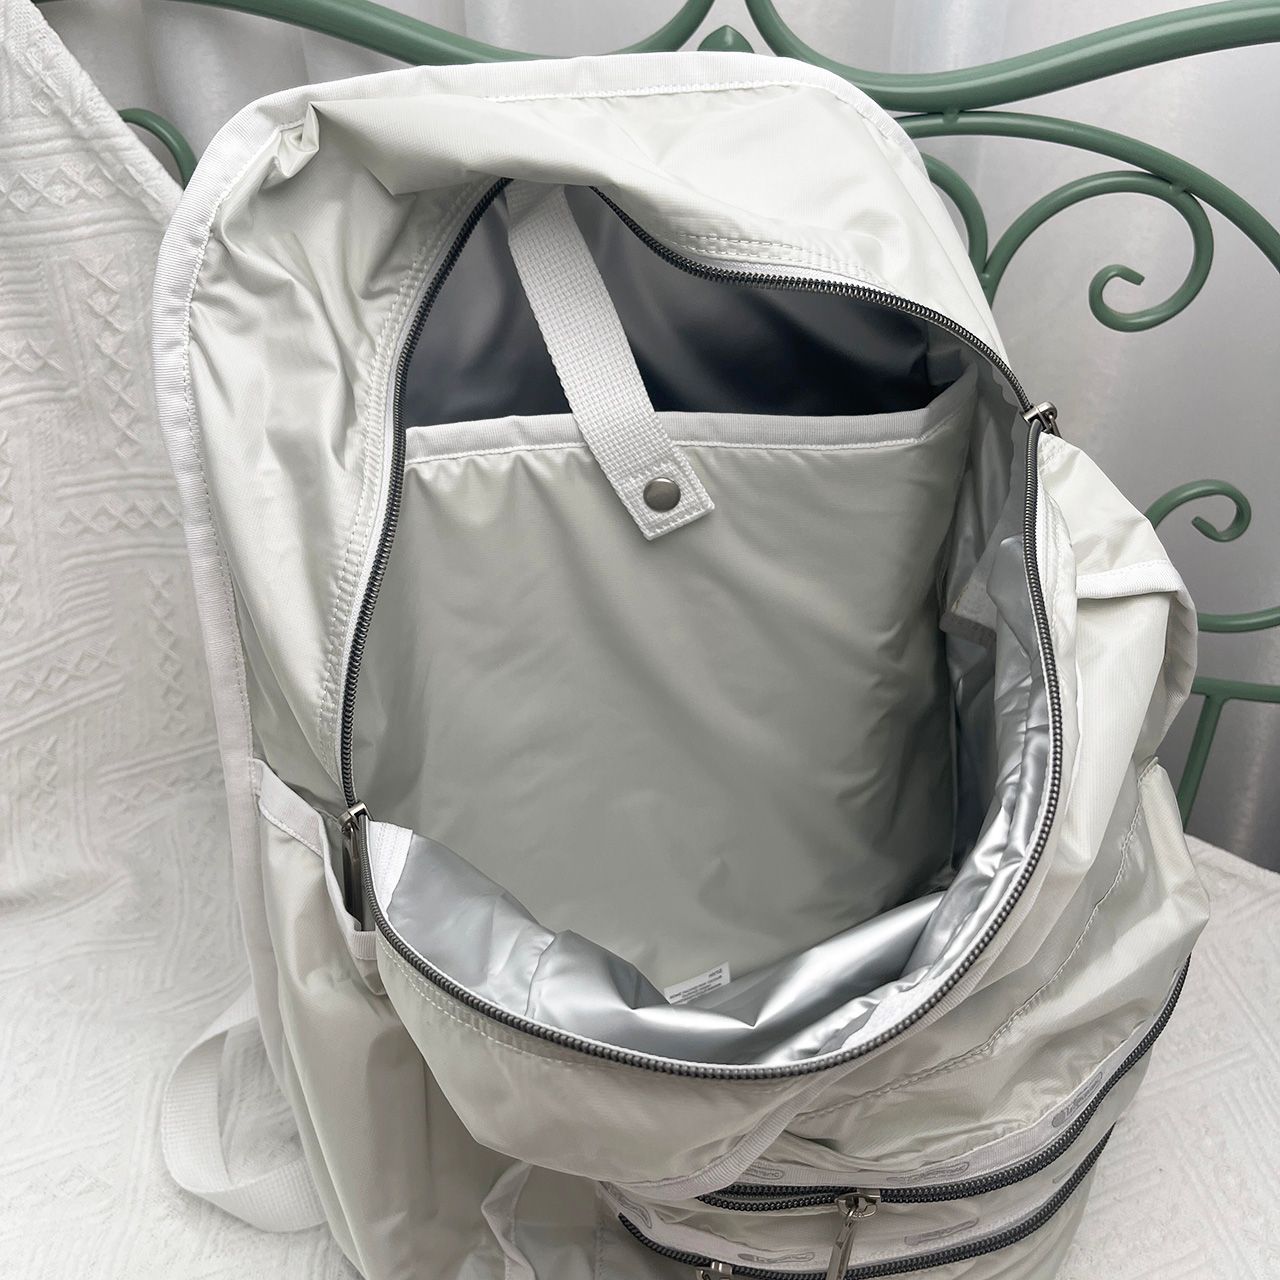 レスポートサック リュックバッグ 大容量 防水デザイン ホワイト